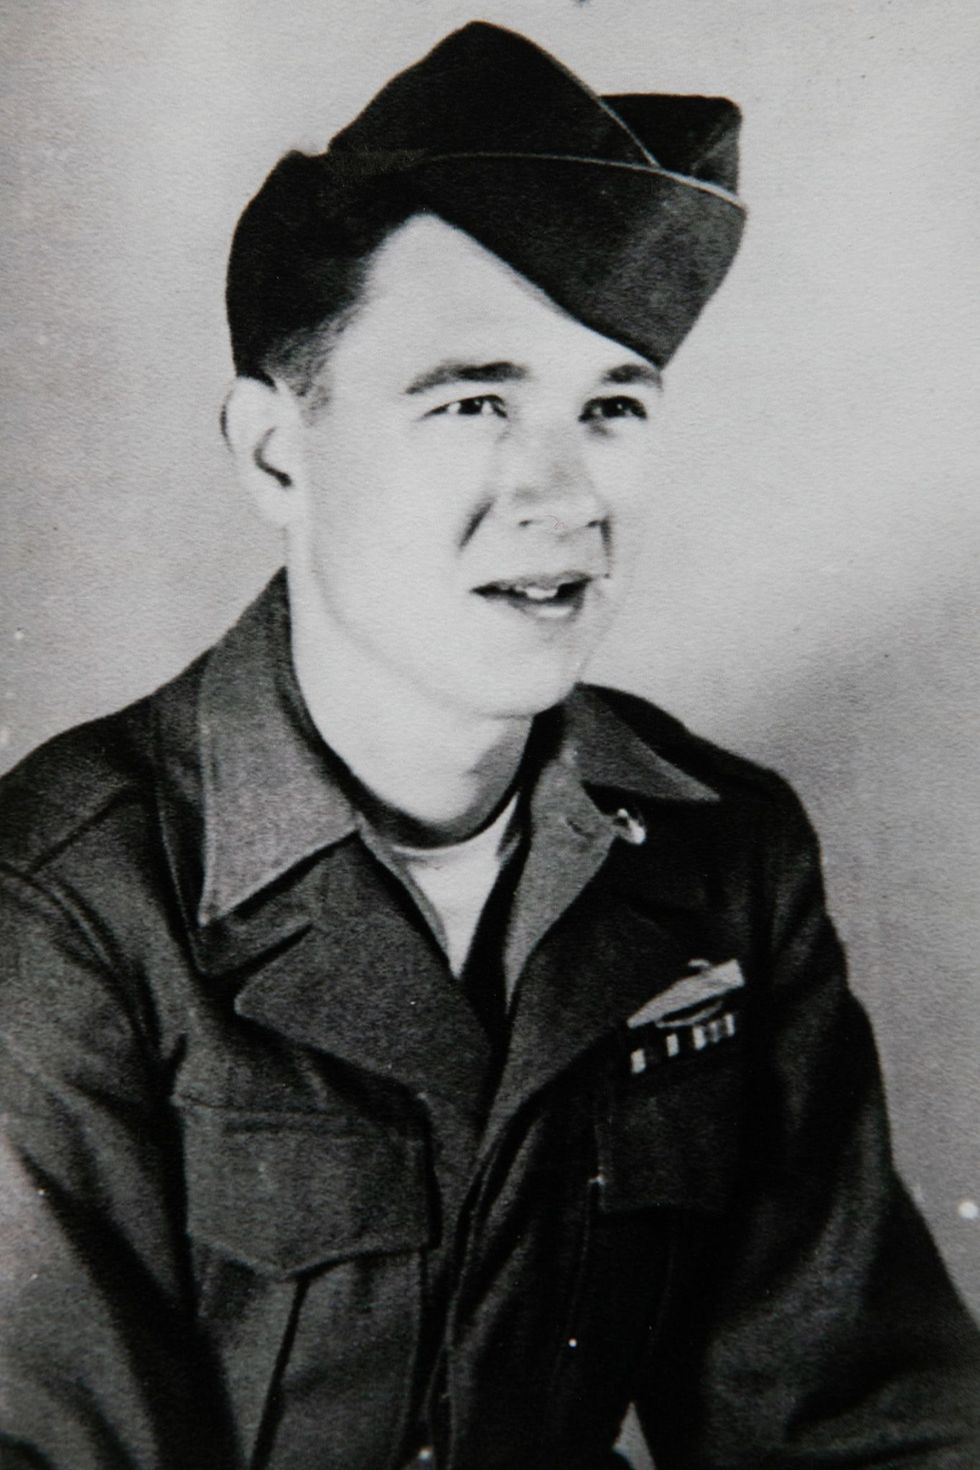 Vernon Brantley was twintig toen hij aan de Battle of the Bulge de Slag om de Ardennen deelnam Hij draagt zijn Army Combat Action Badge met trots